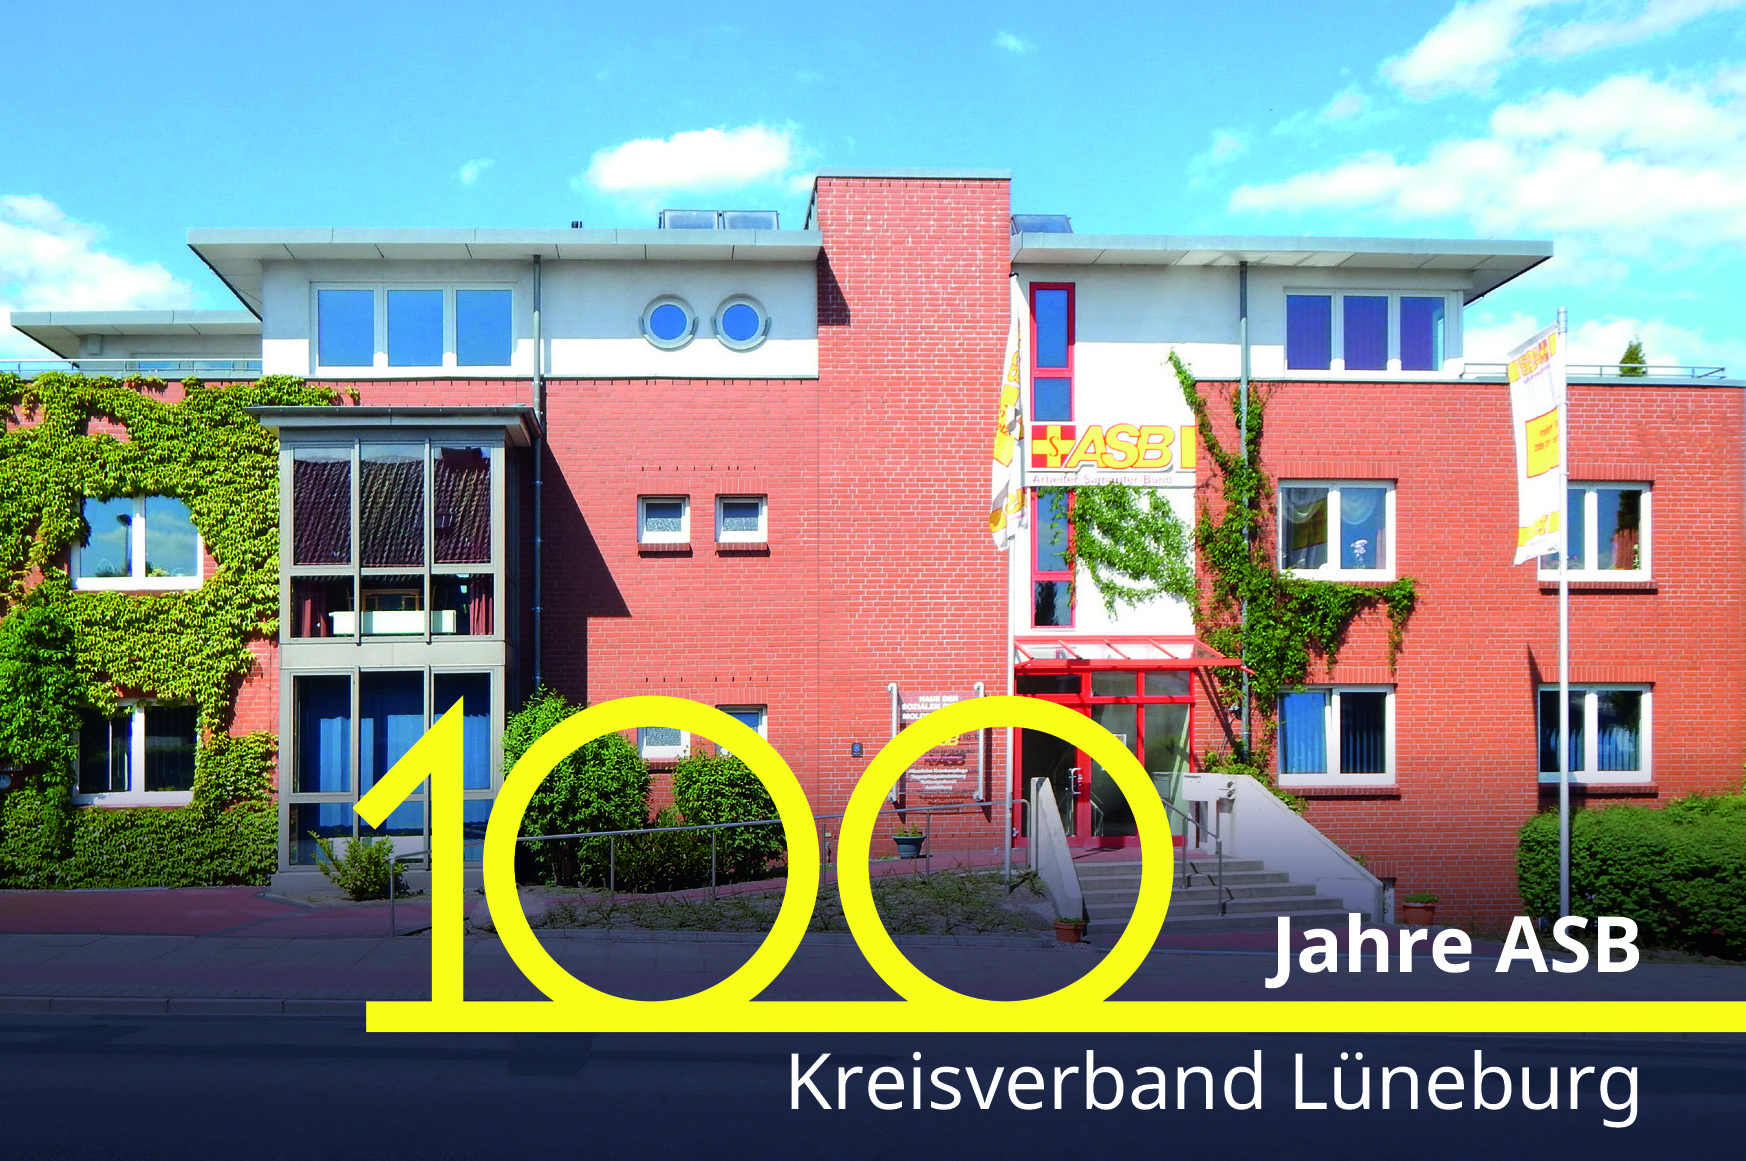 100 Jahre ASB Kreisverband Lüneburg. Einladung zur Jubiläumsveranstaltung